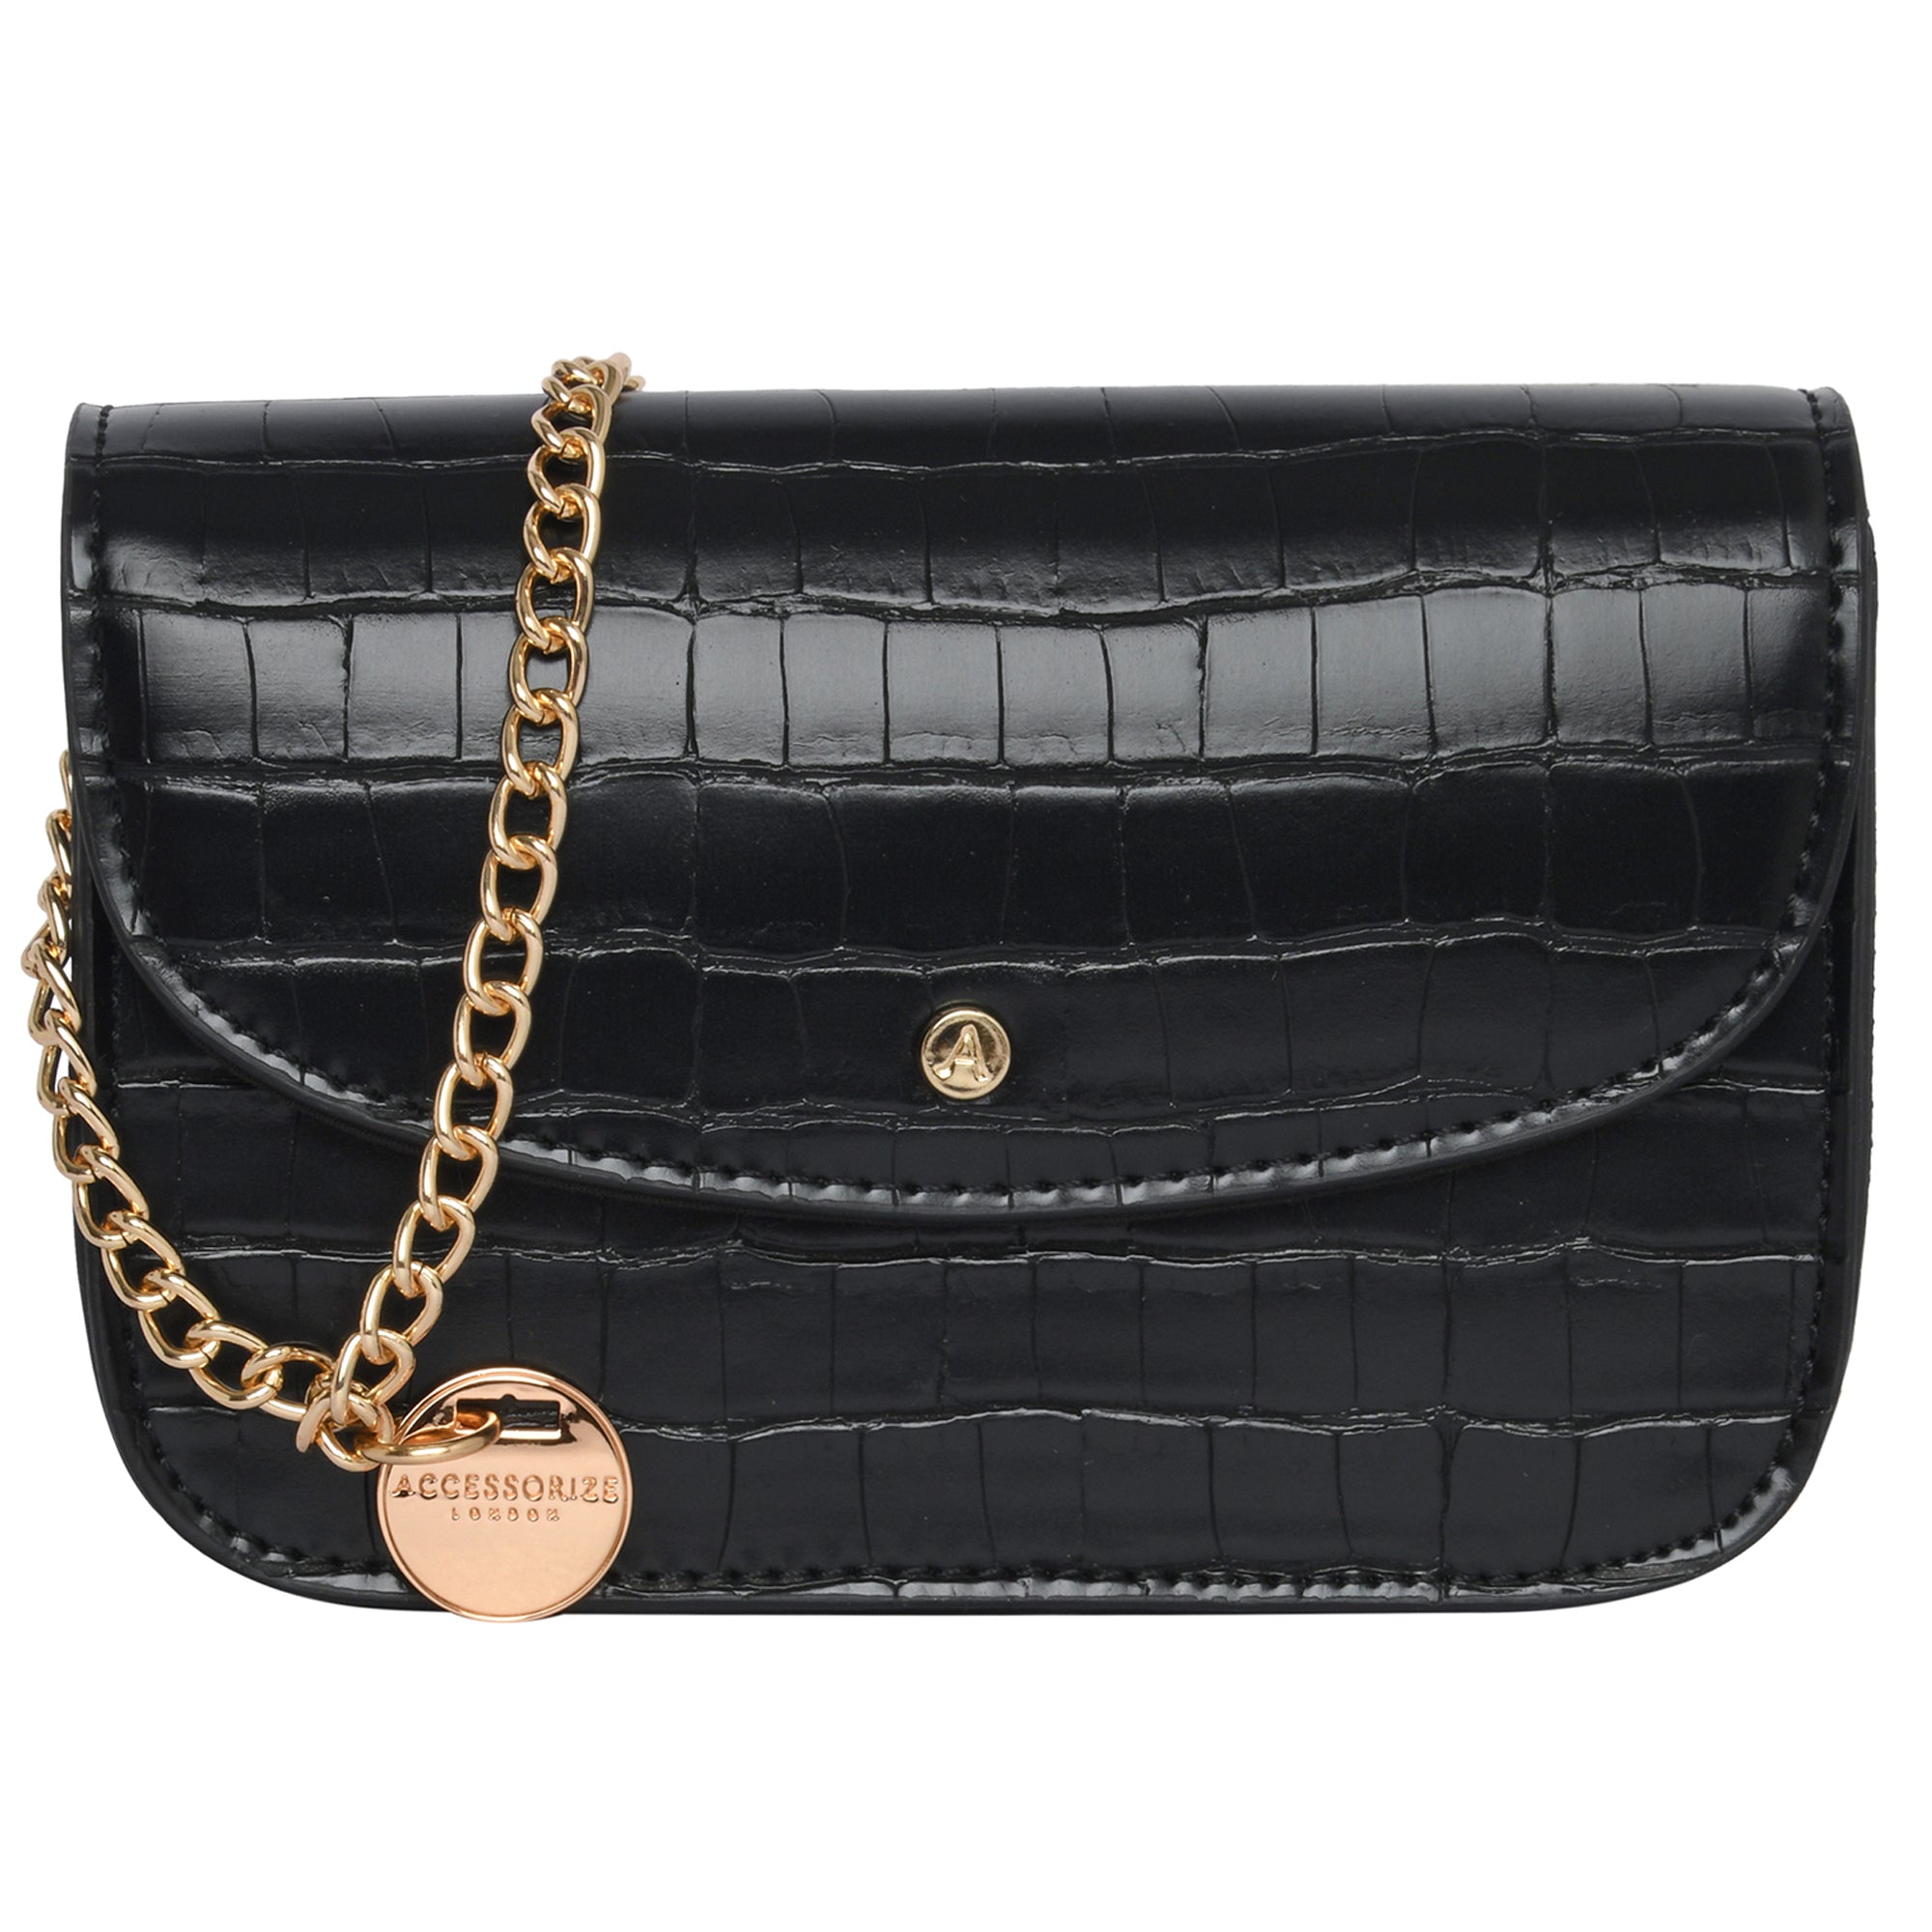 Designer Handbags LN 085 | Bags, Top handbags, Affordable bag